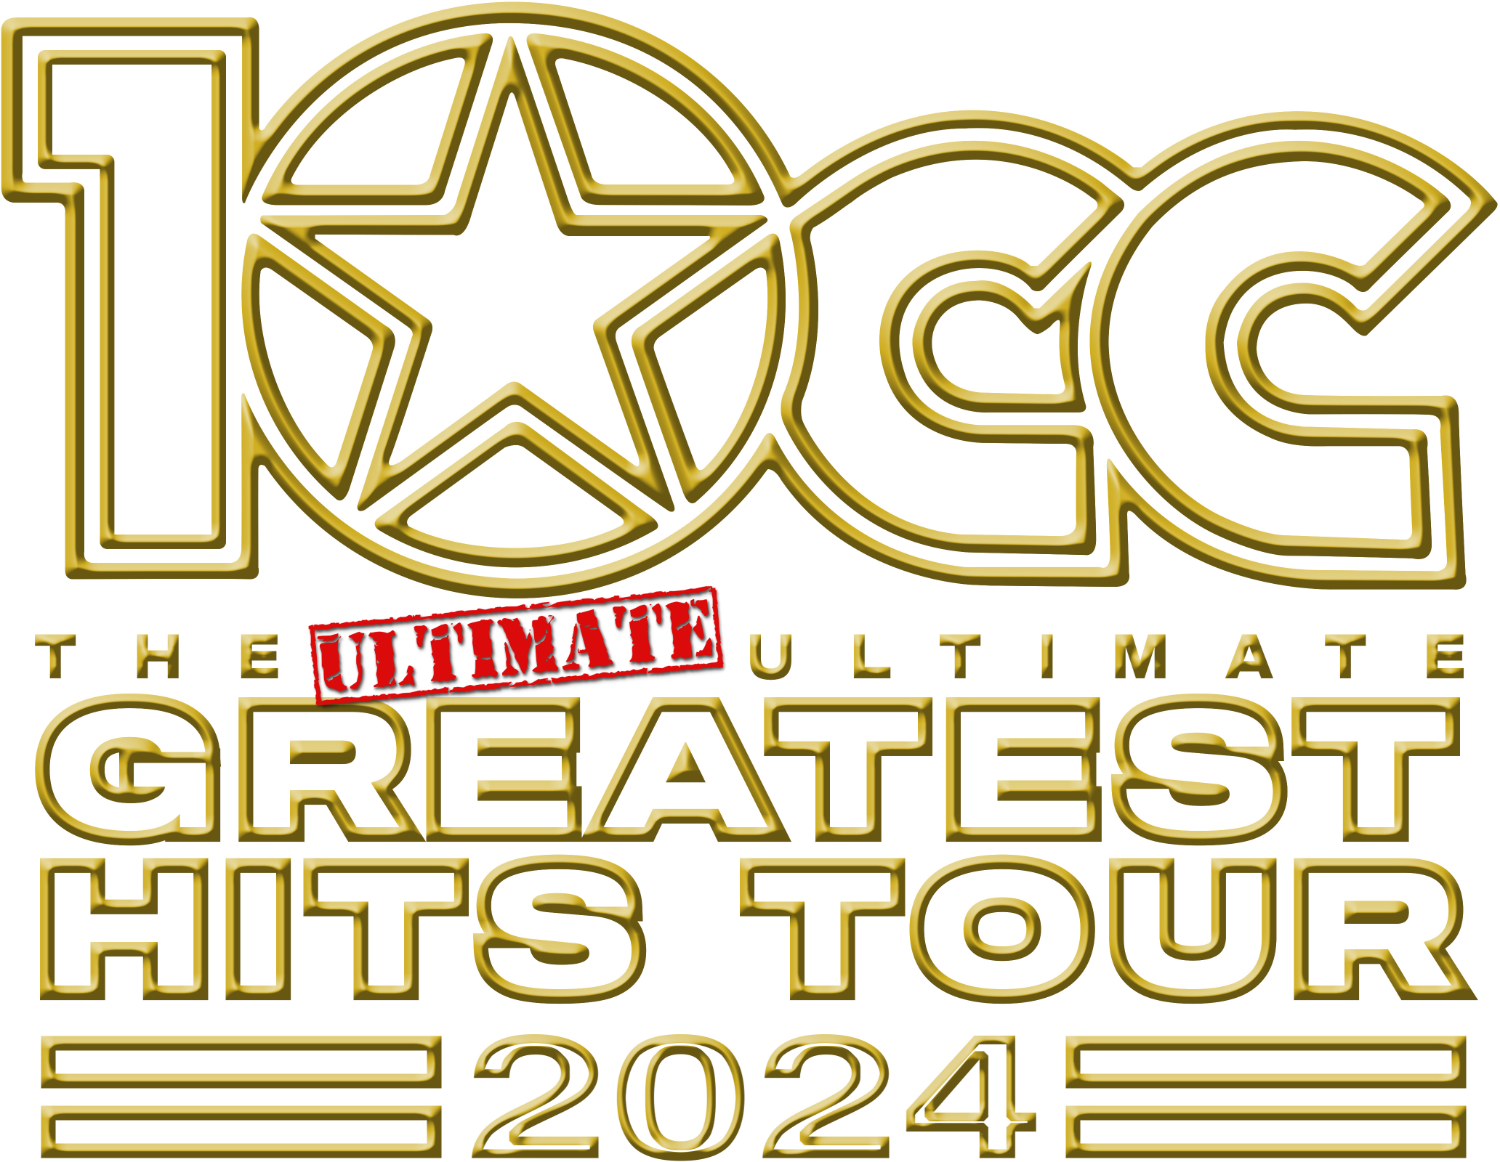 10cc on tour 2023